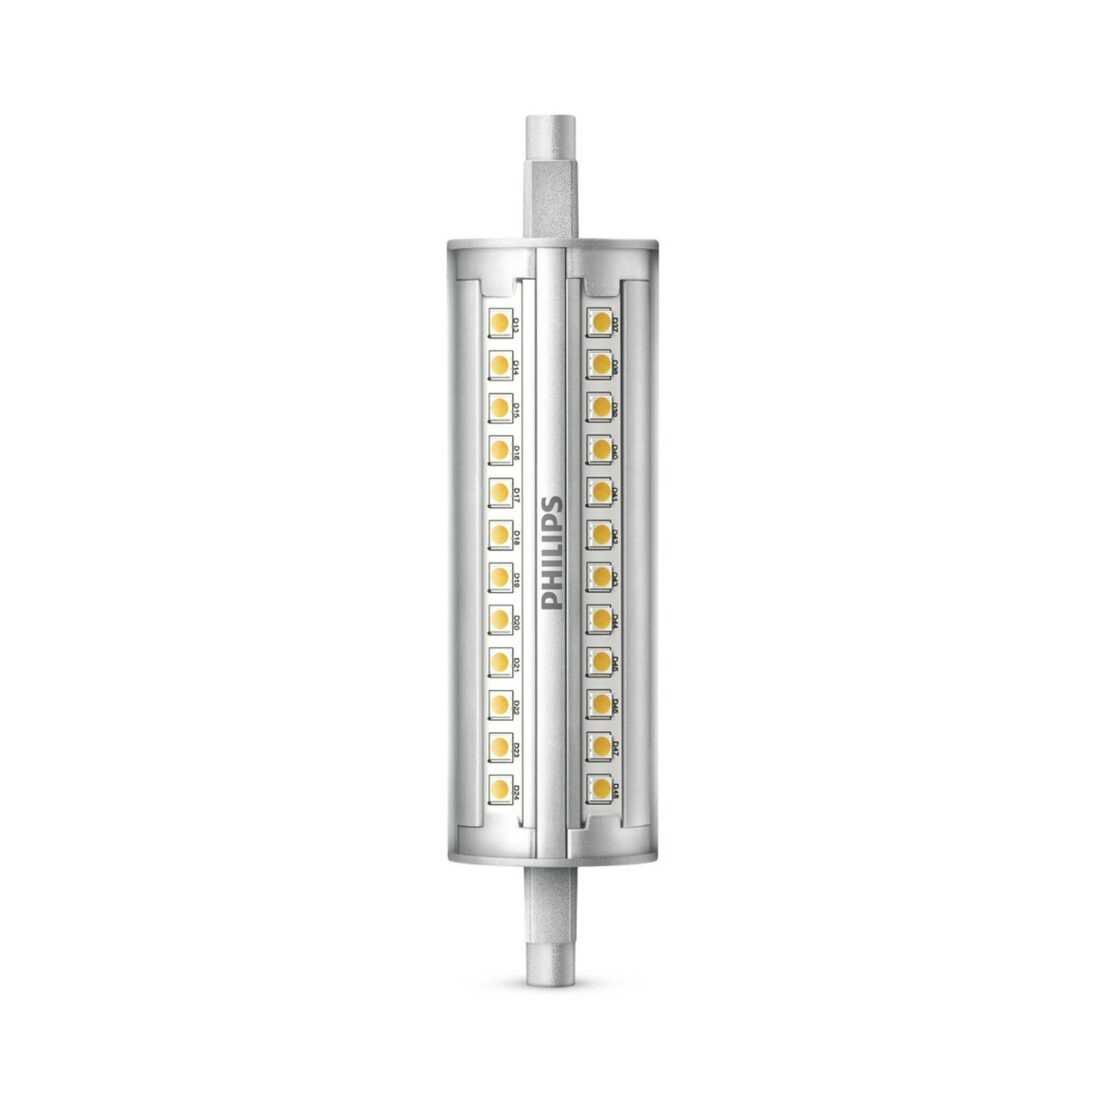 Philips R7s 14W 830 LED tyčová žárovka